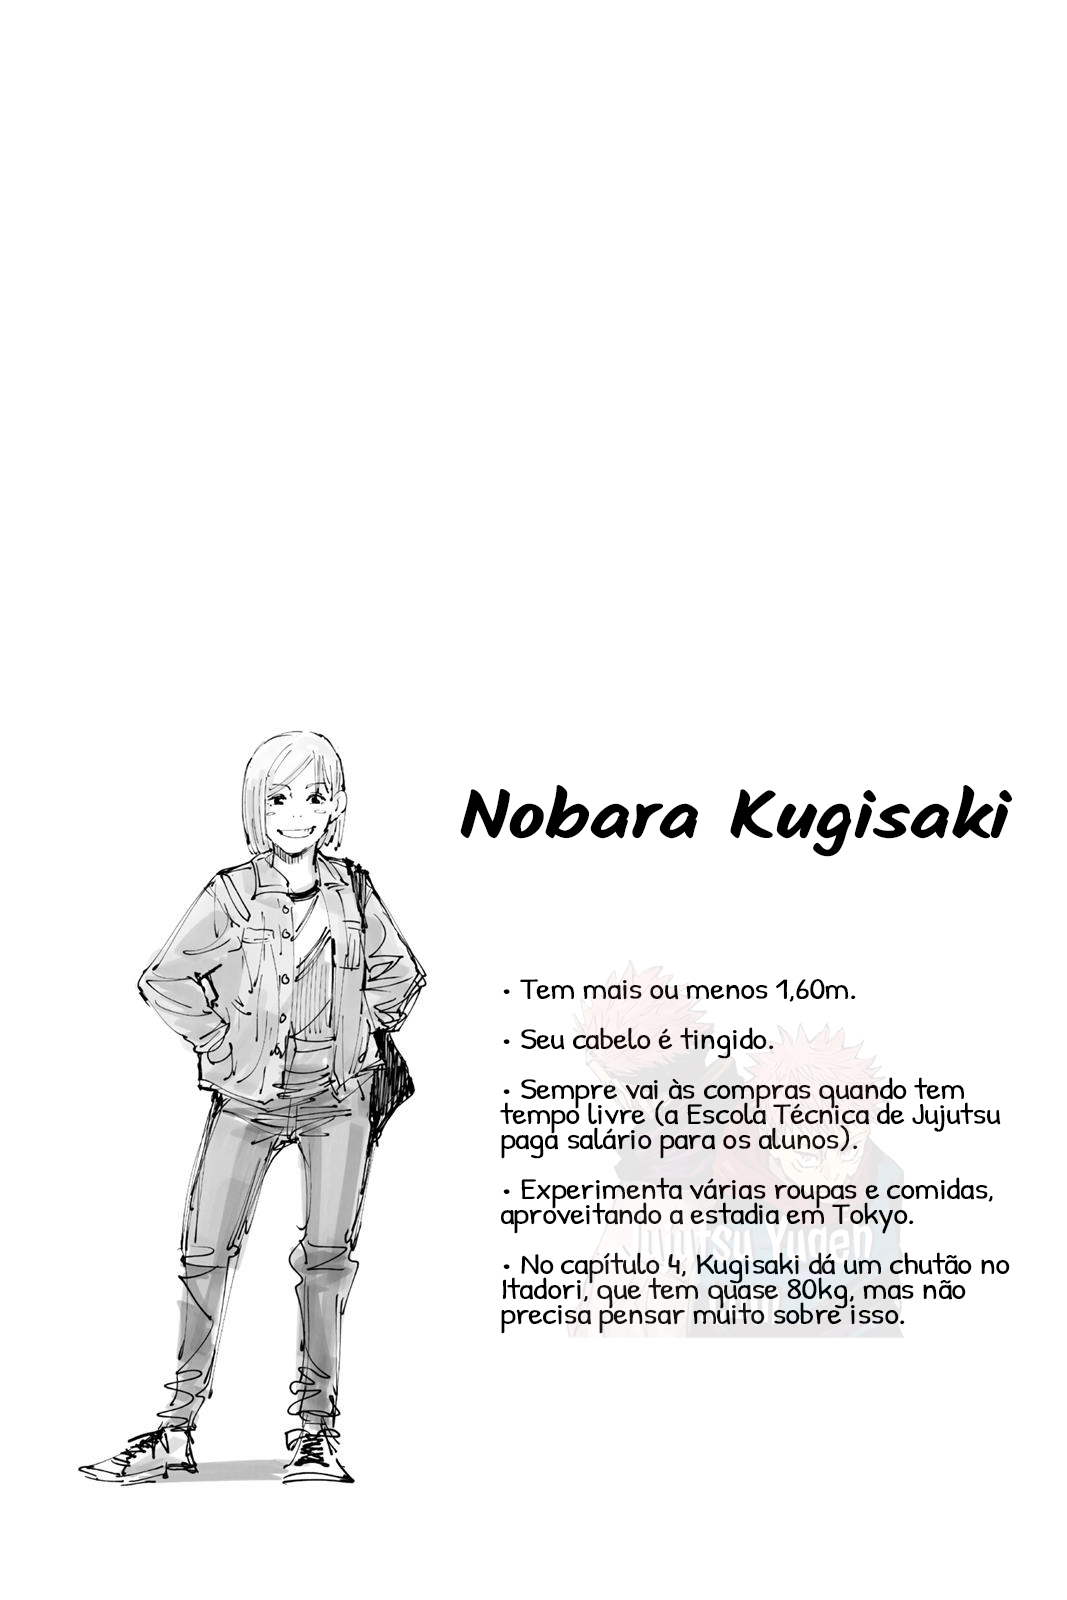 vol1-ficha-nobara-kugisaki